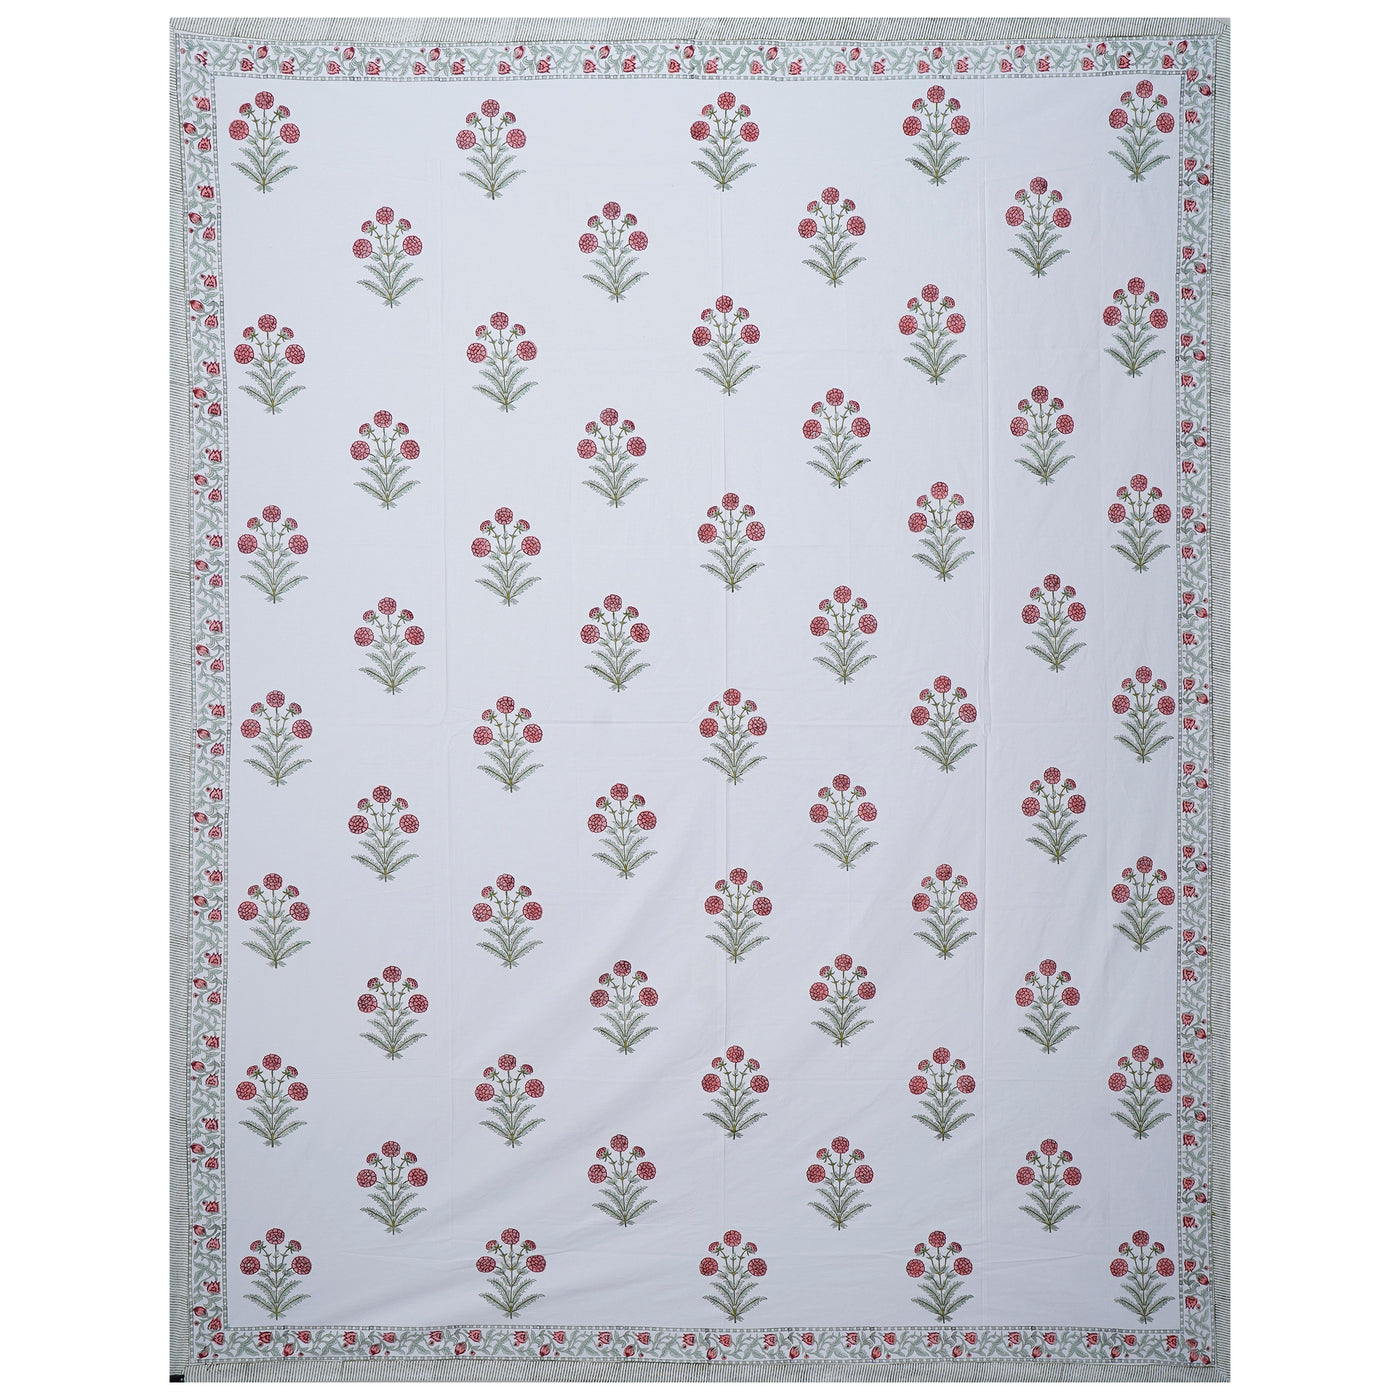 Parikshit Handblock Cotton King Size Bed Sheet